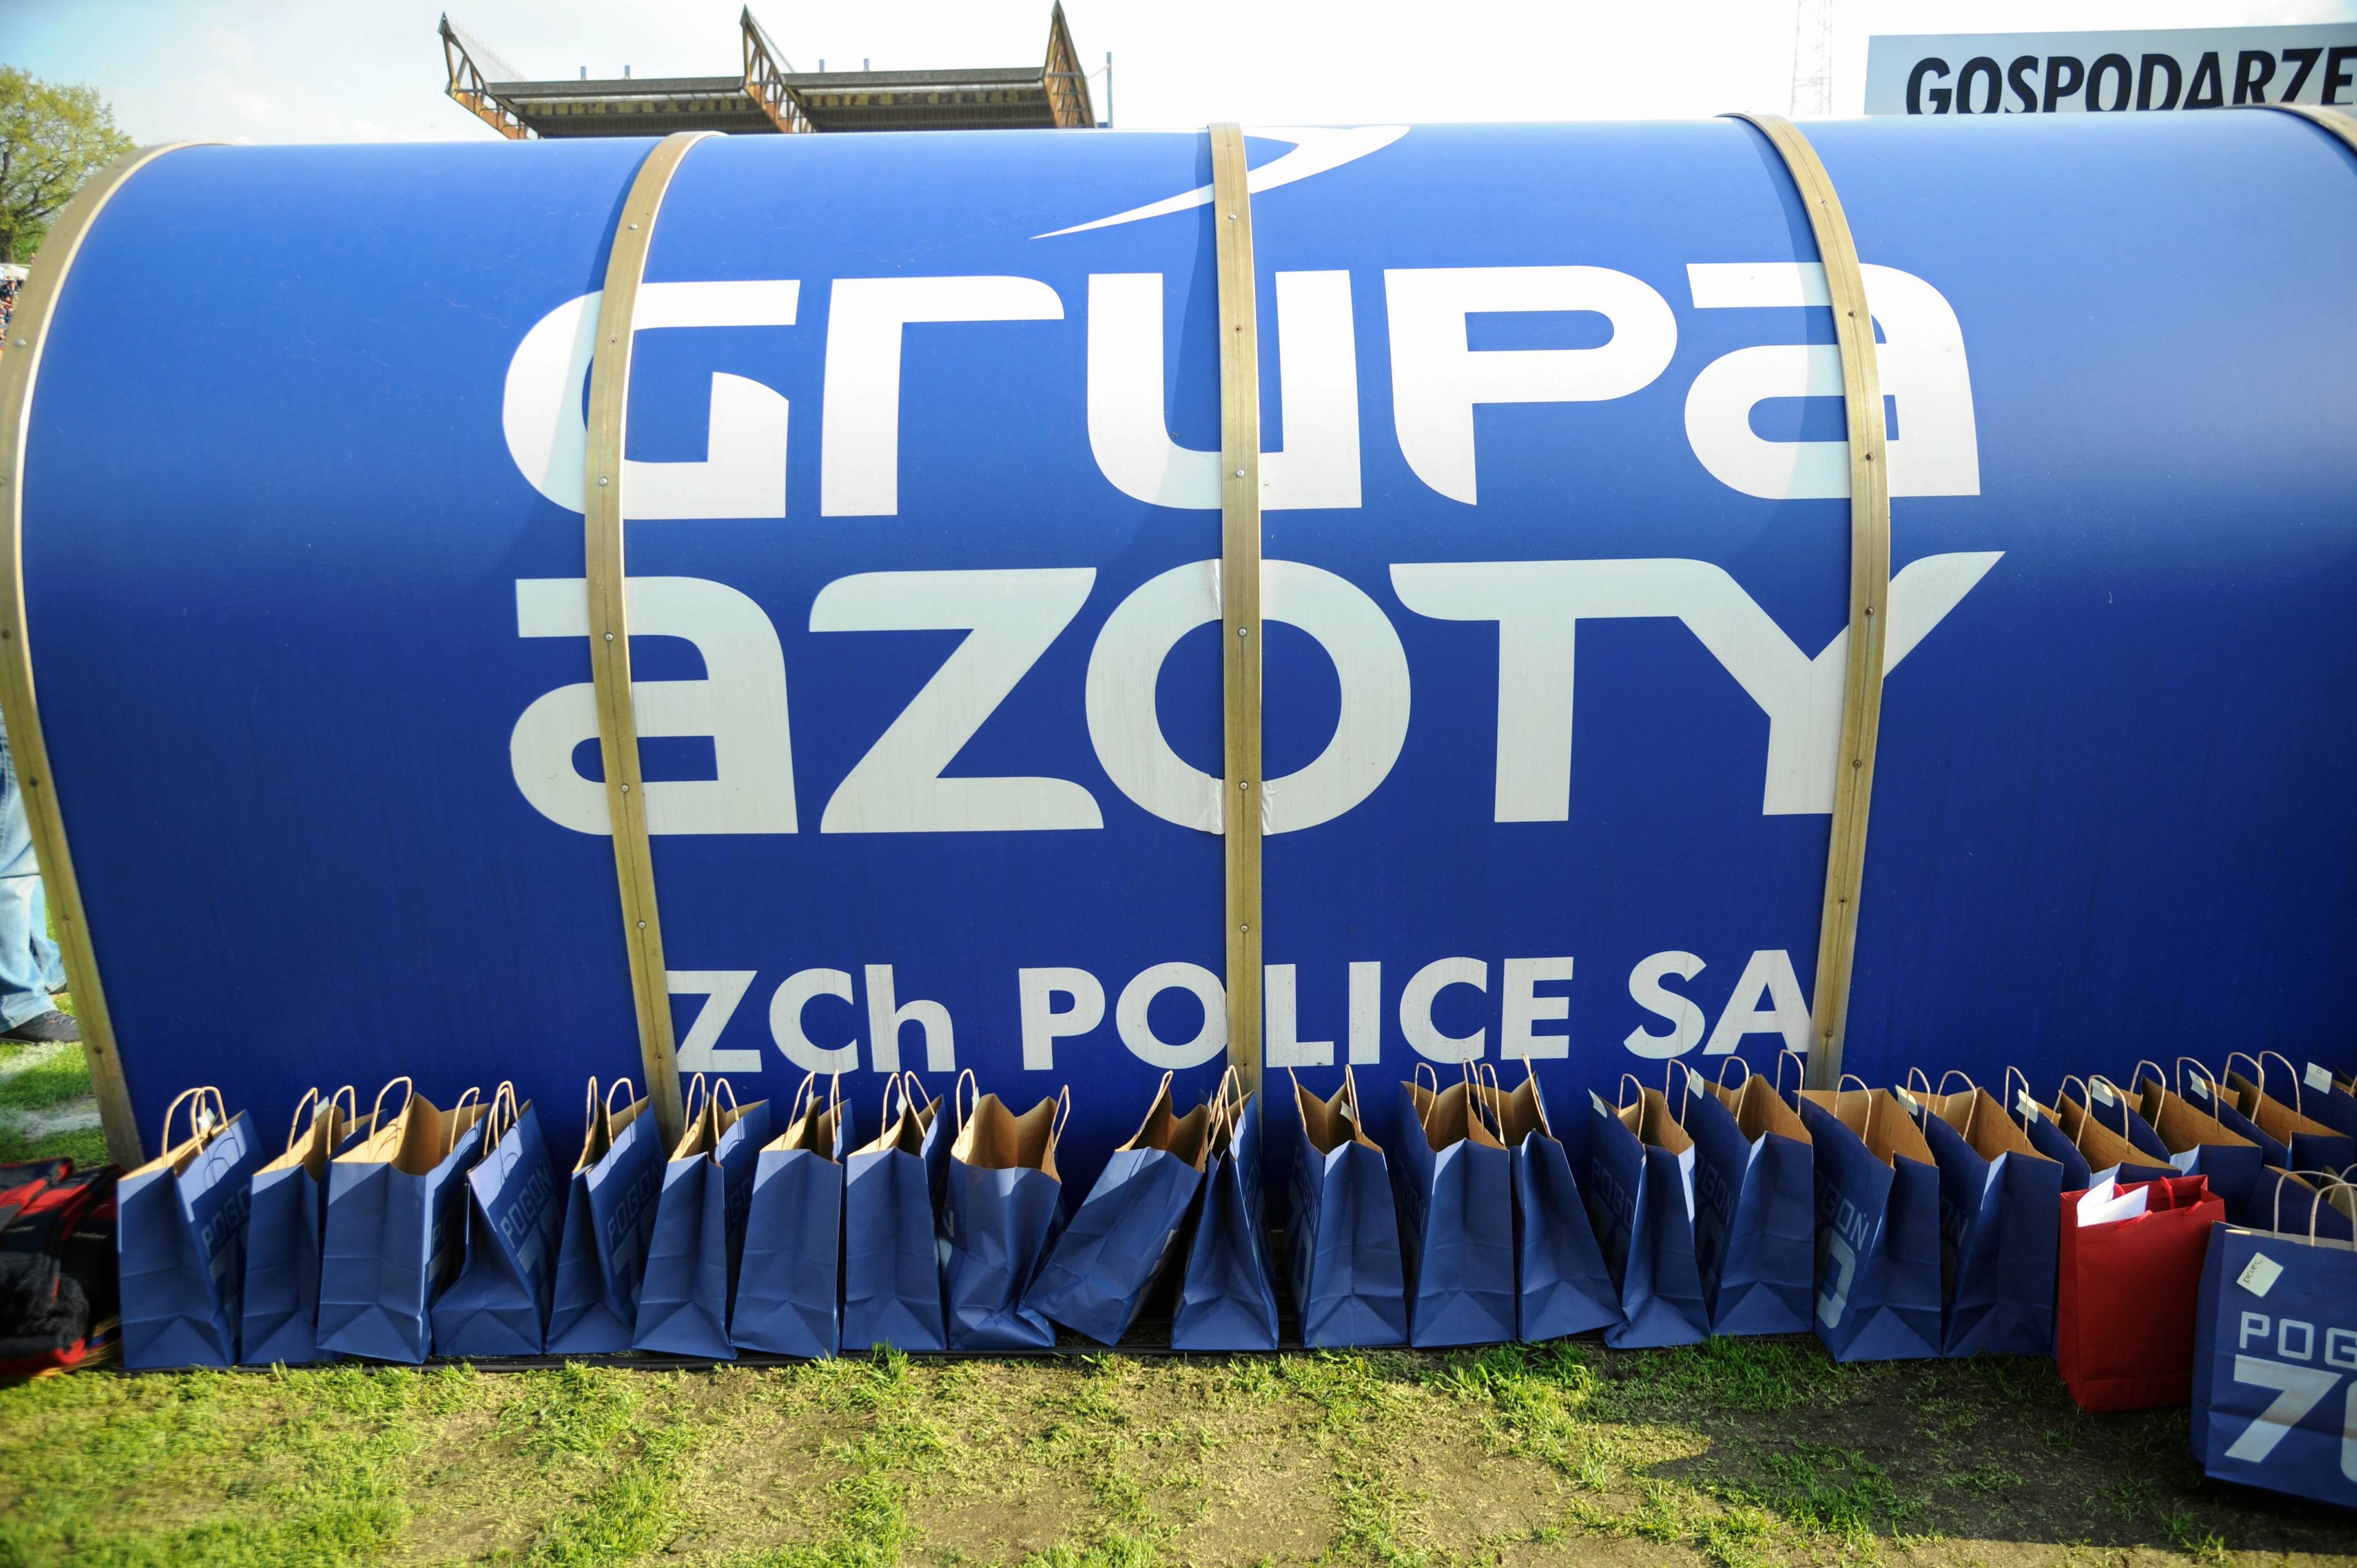 Banner z napisem "Grupa Azoty", białe litery na niebieskim tle